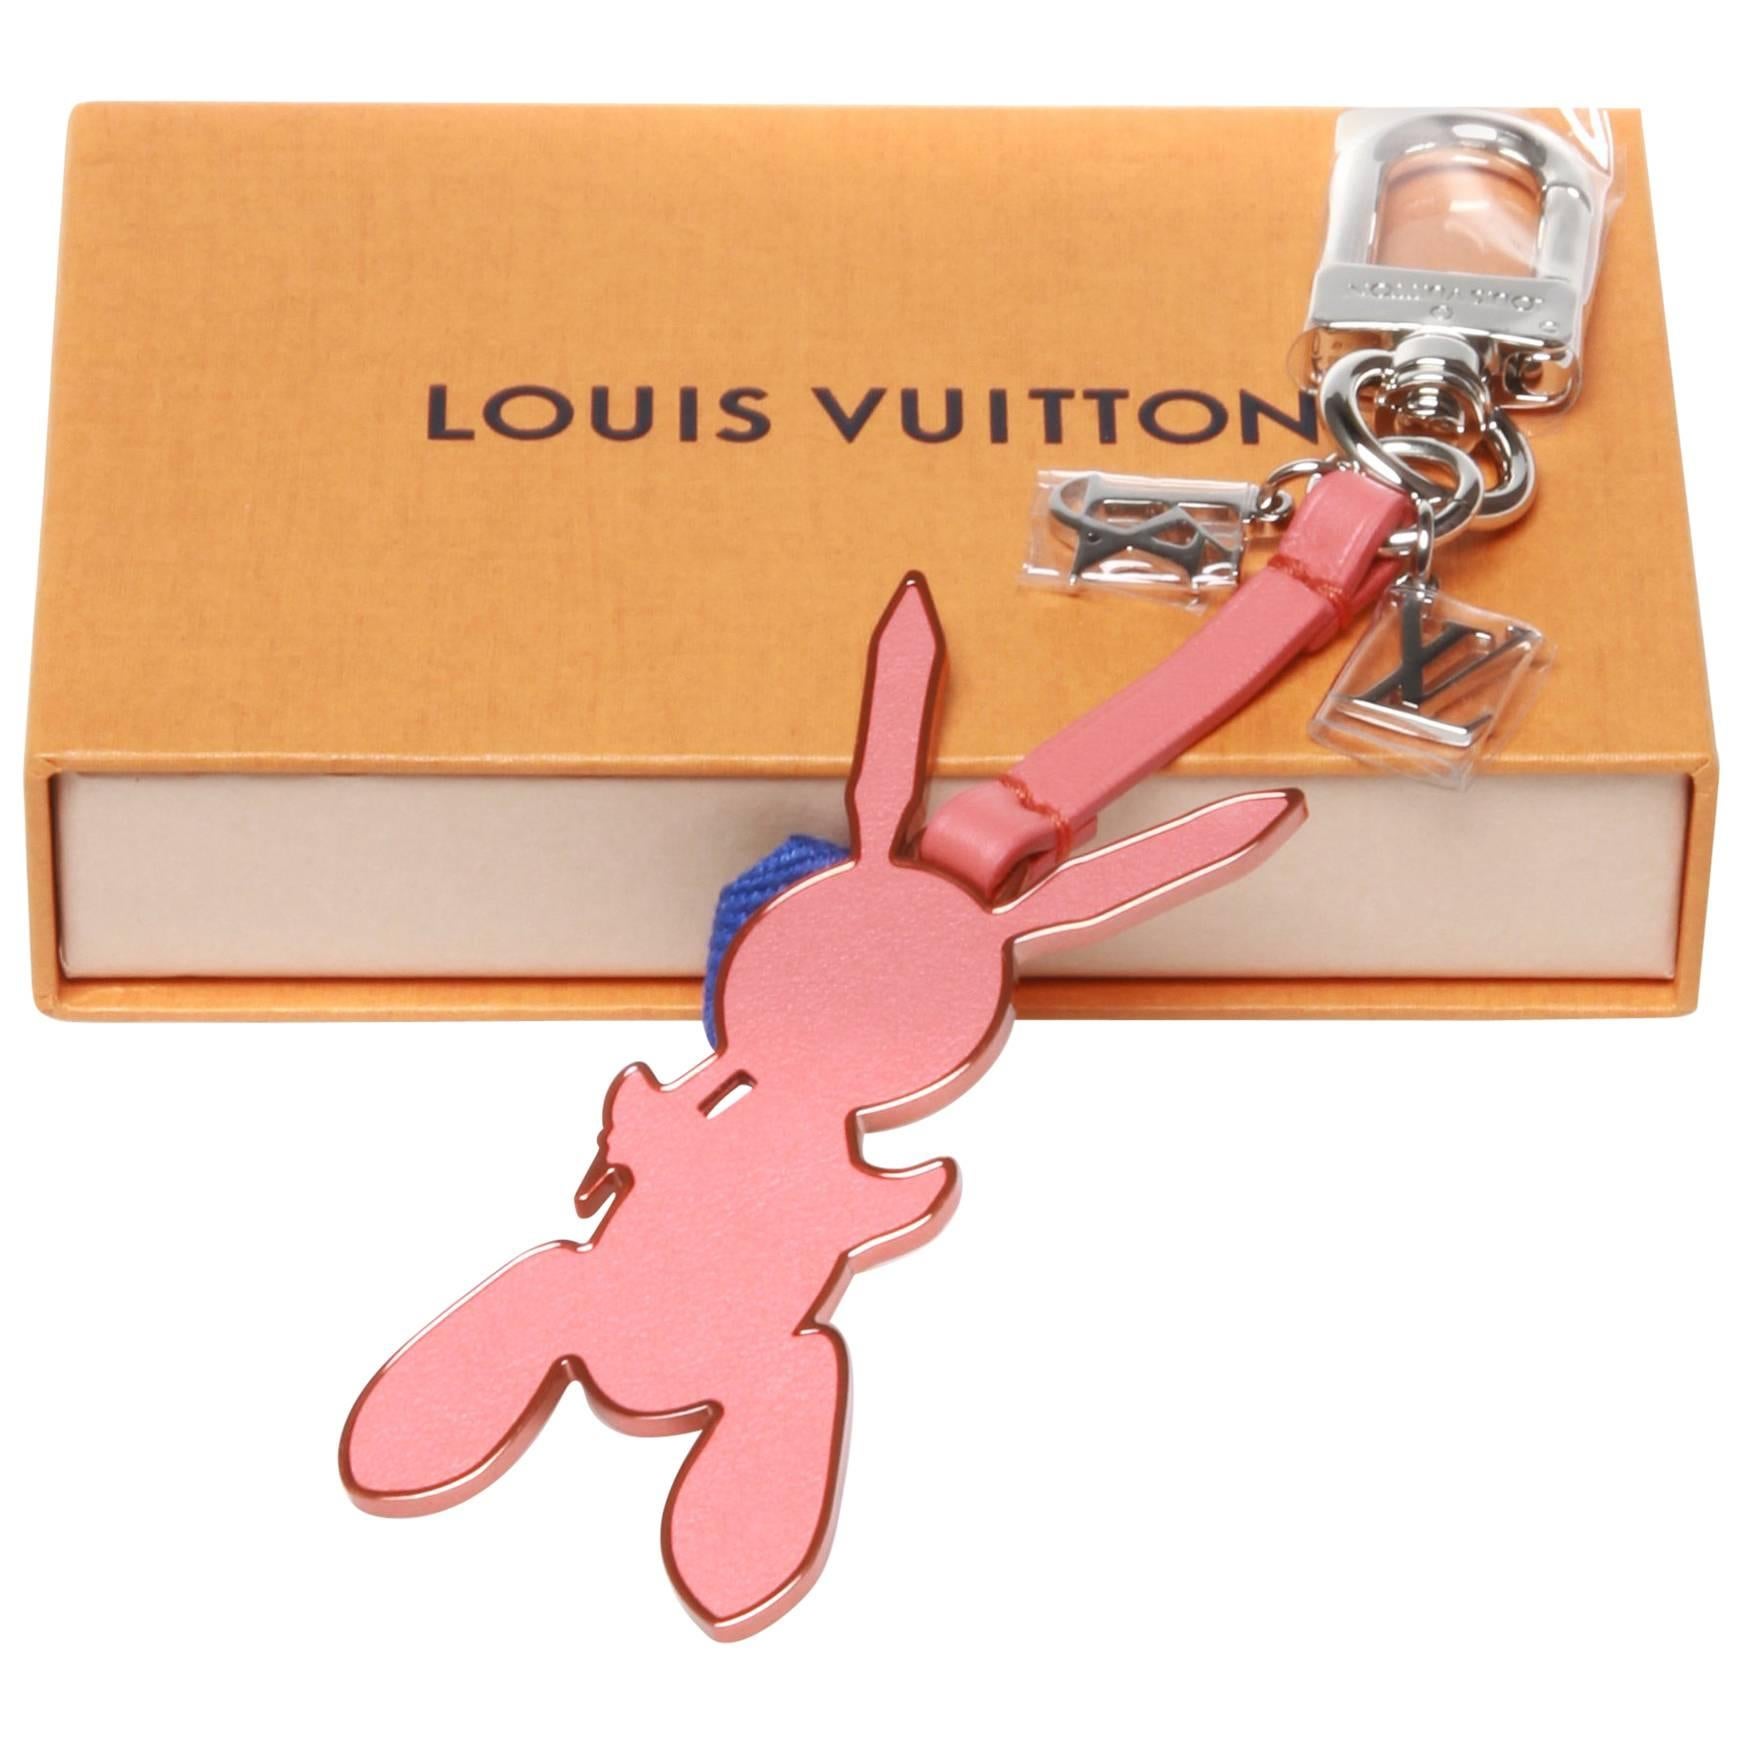 Louis Vuitton x Jeff Koons Bag Charm 